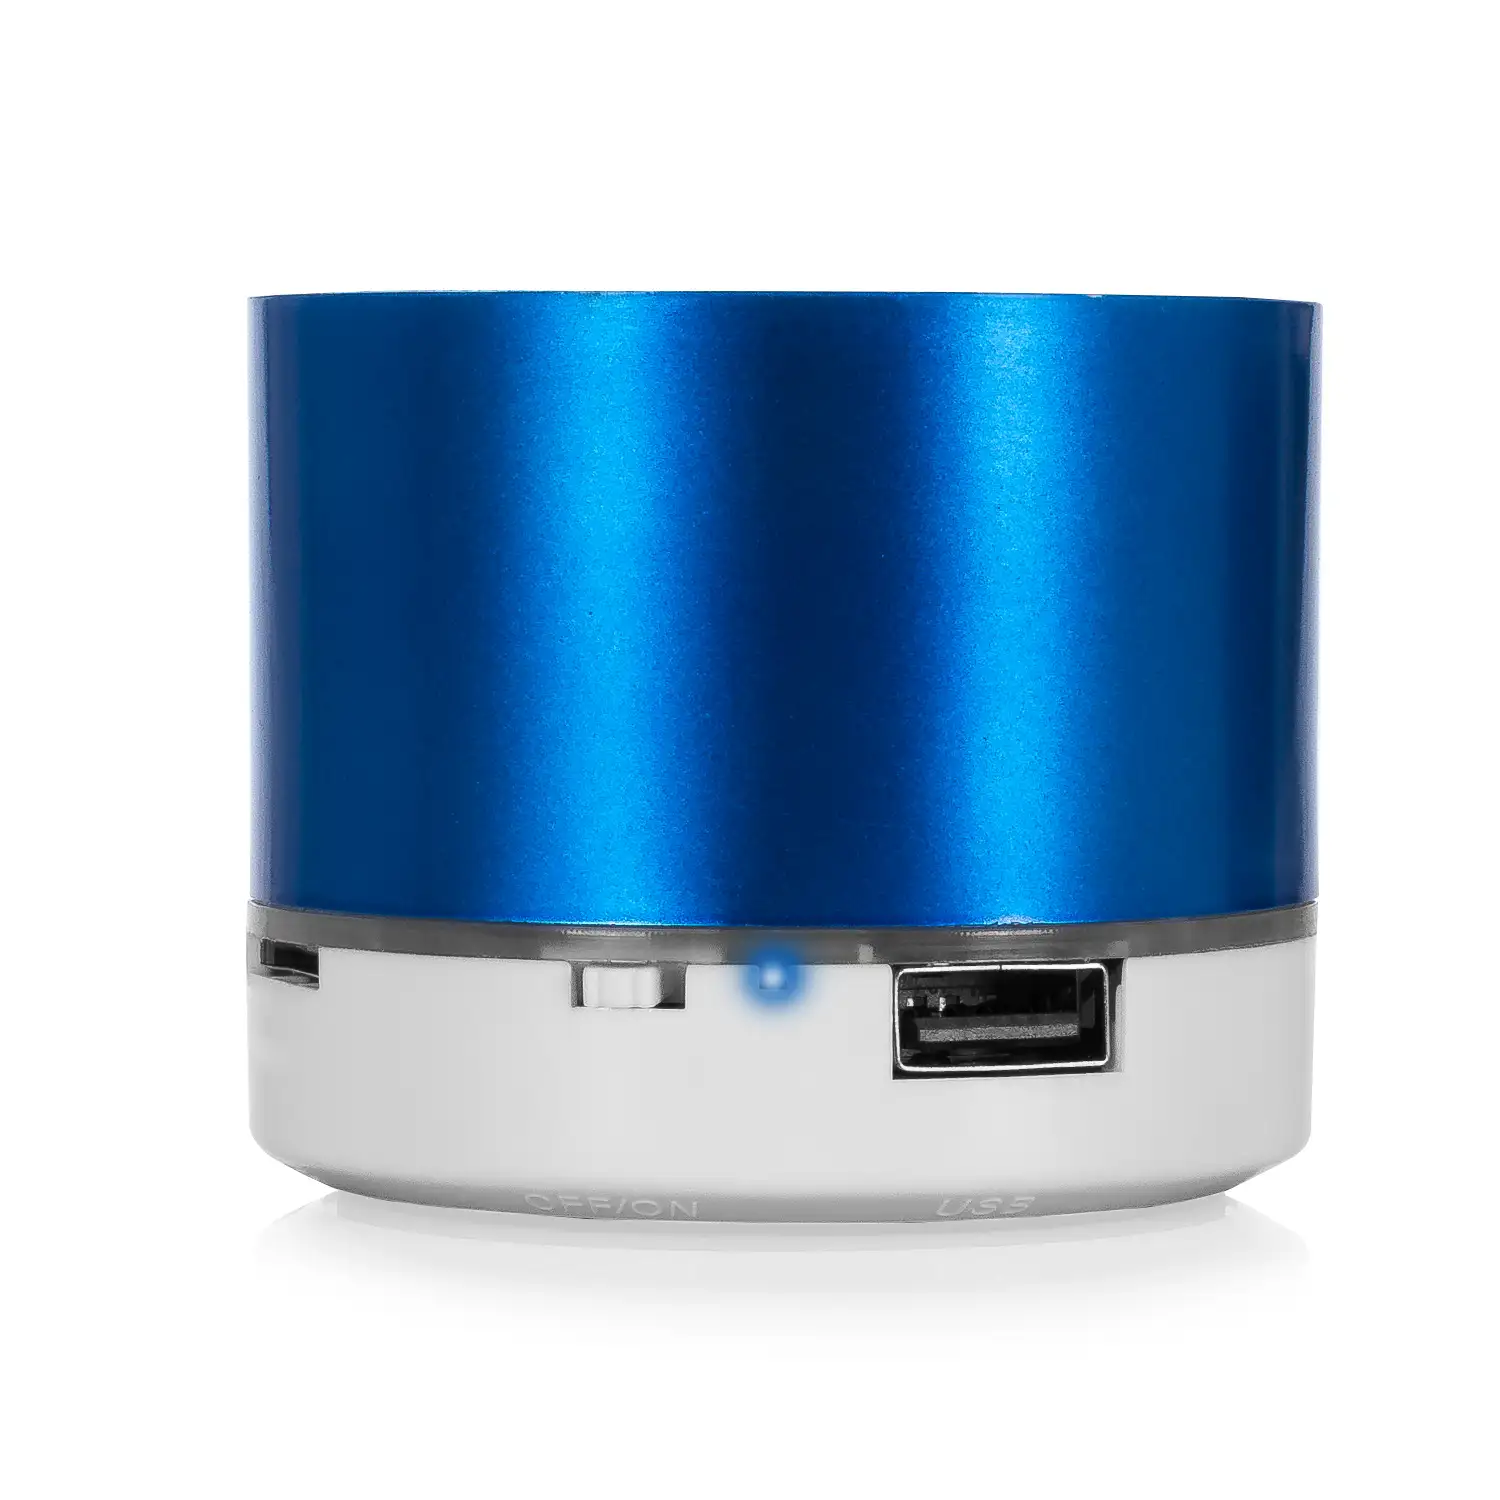 Altavoz compacto Viancos Bluetooth 3.0 de 3W, con luz led, manos libres y radio FM.